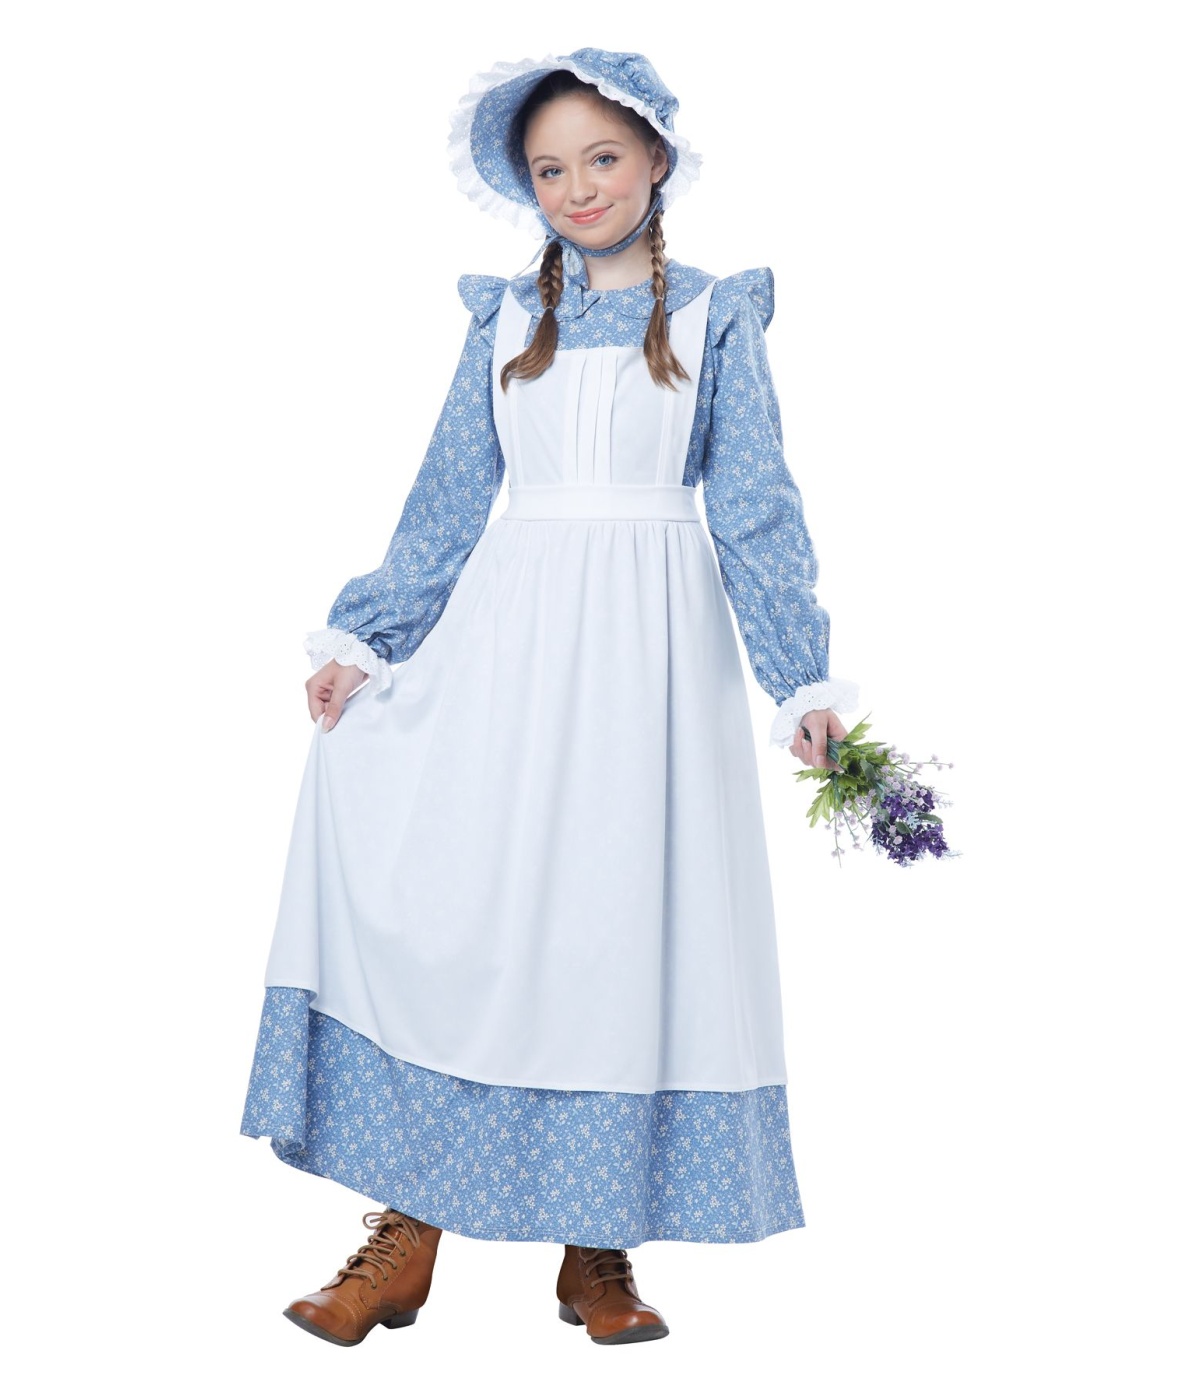 American Pioneer Girl Colonial Costume